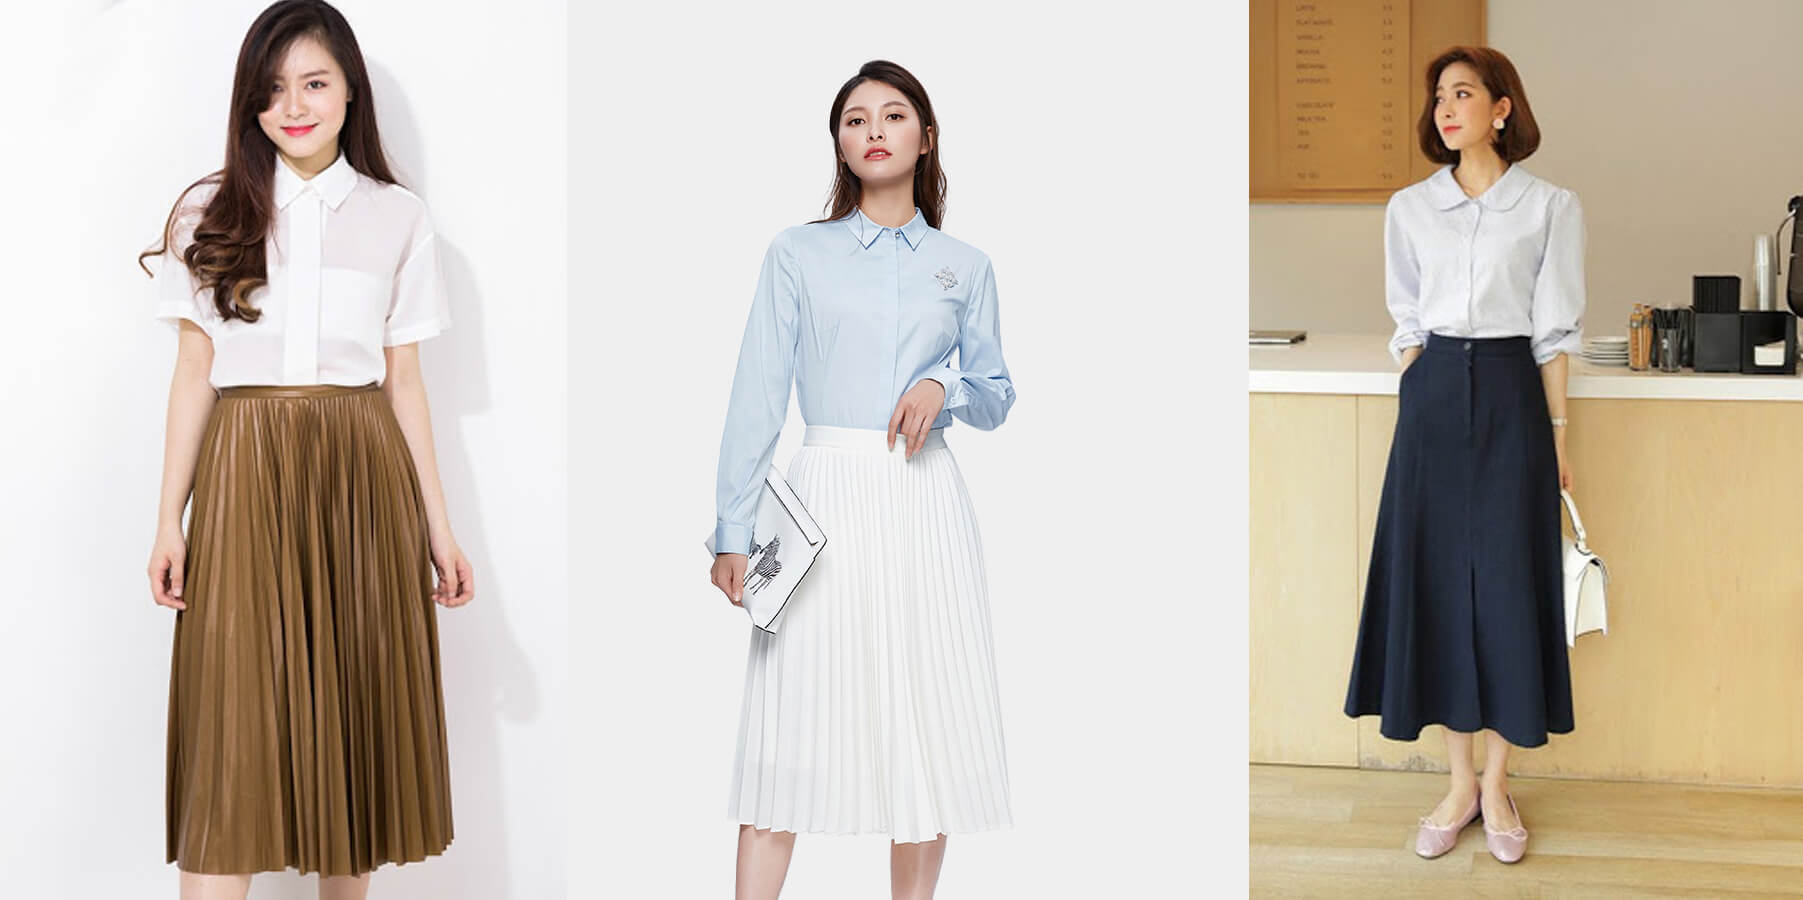 Mặc gì bây giờ 10 gợi ý phối đồ cùng áo sơ mi trắng đảm bảo sành điệu như  fashionista  BlogAnChoi